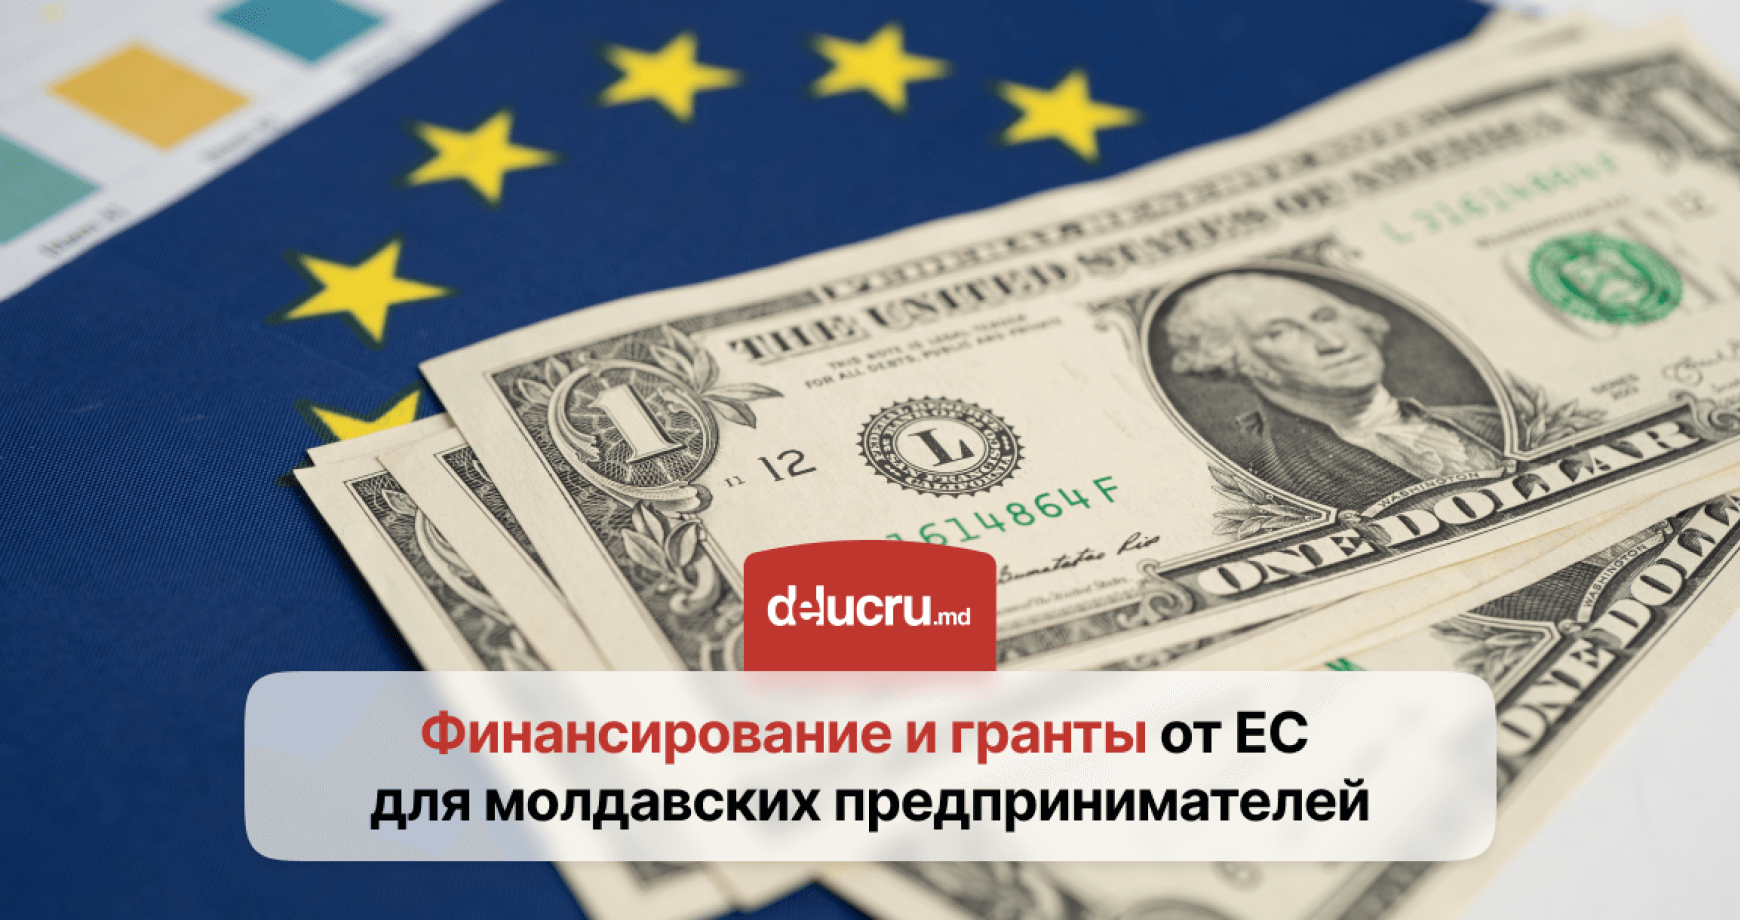 Молдавские компании смогут получить финансирование ЕС на реализацию проектов